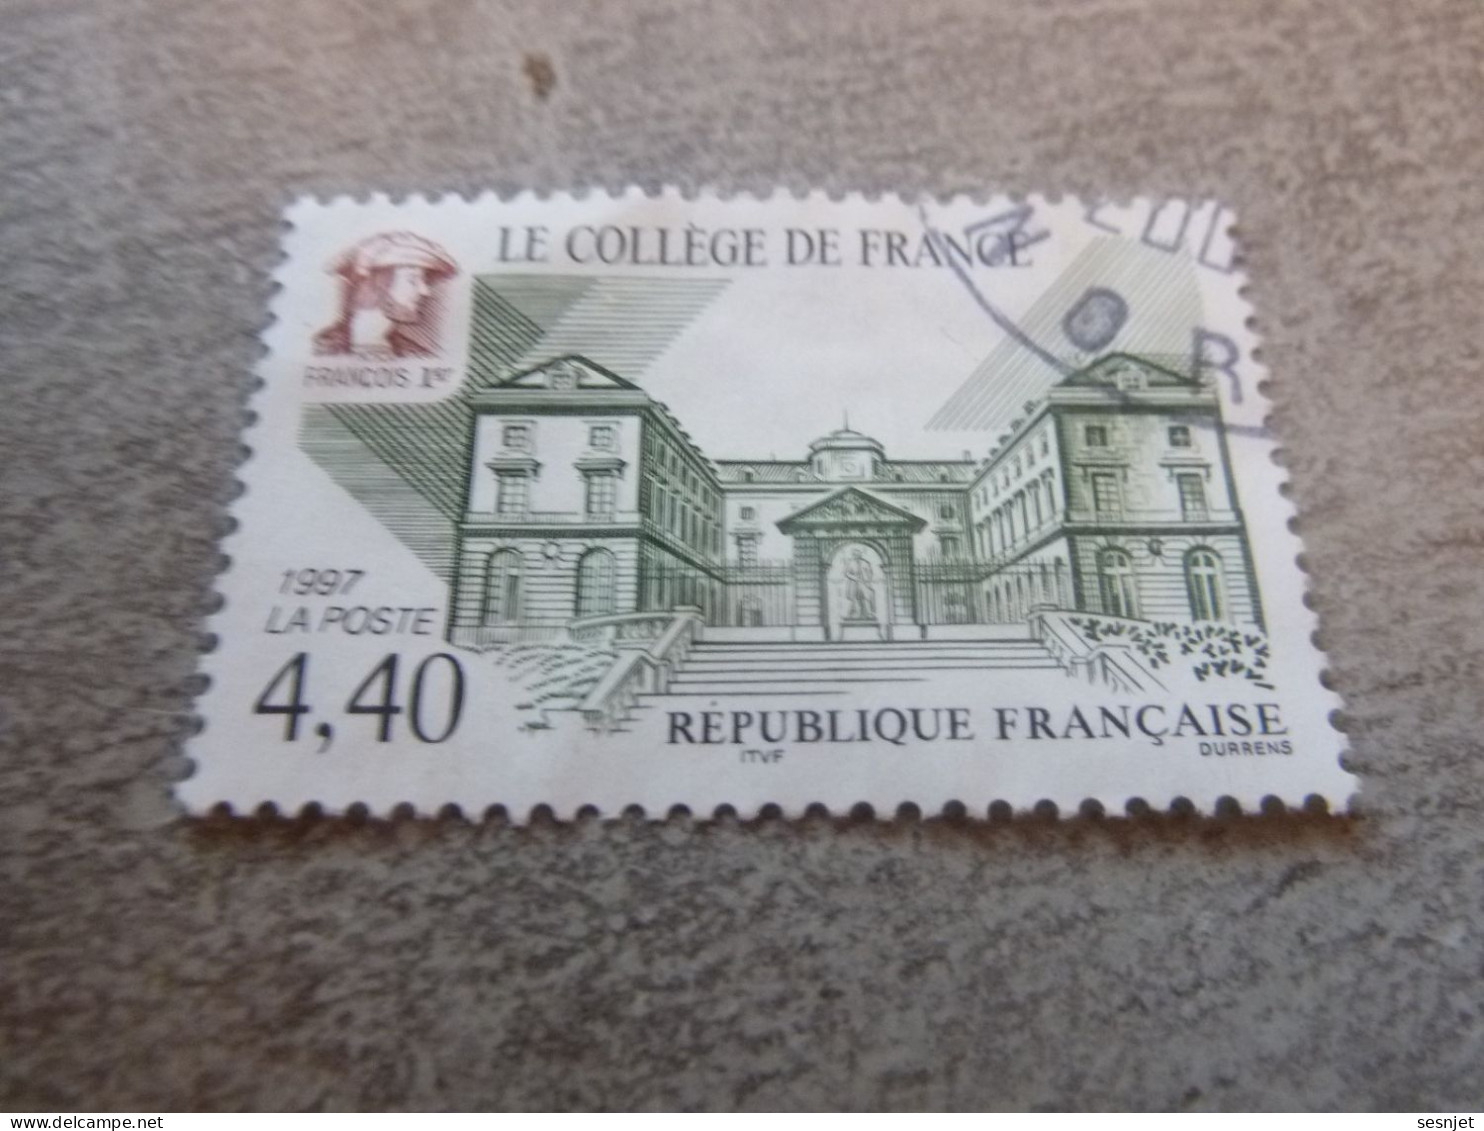 Le Collège De France - 4f.40 - Yt 3114 - Vert, Brun Et Noir - Oblitéré - Année 1997 - - Gebruikt